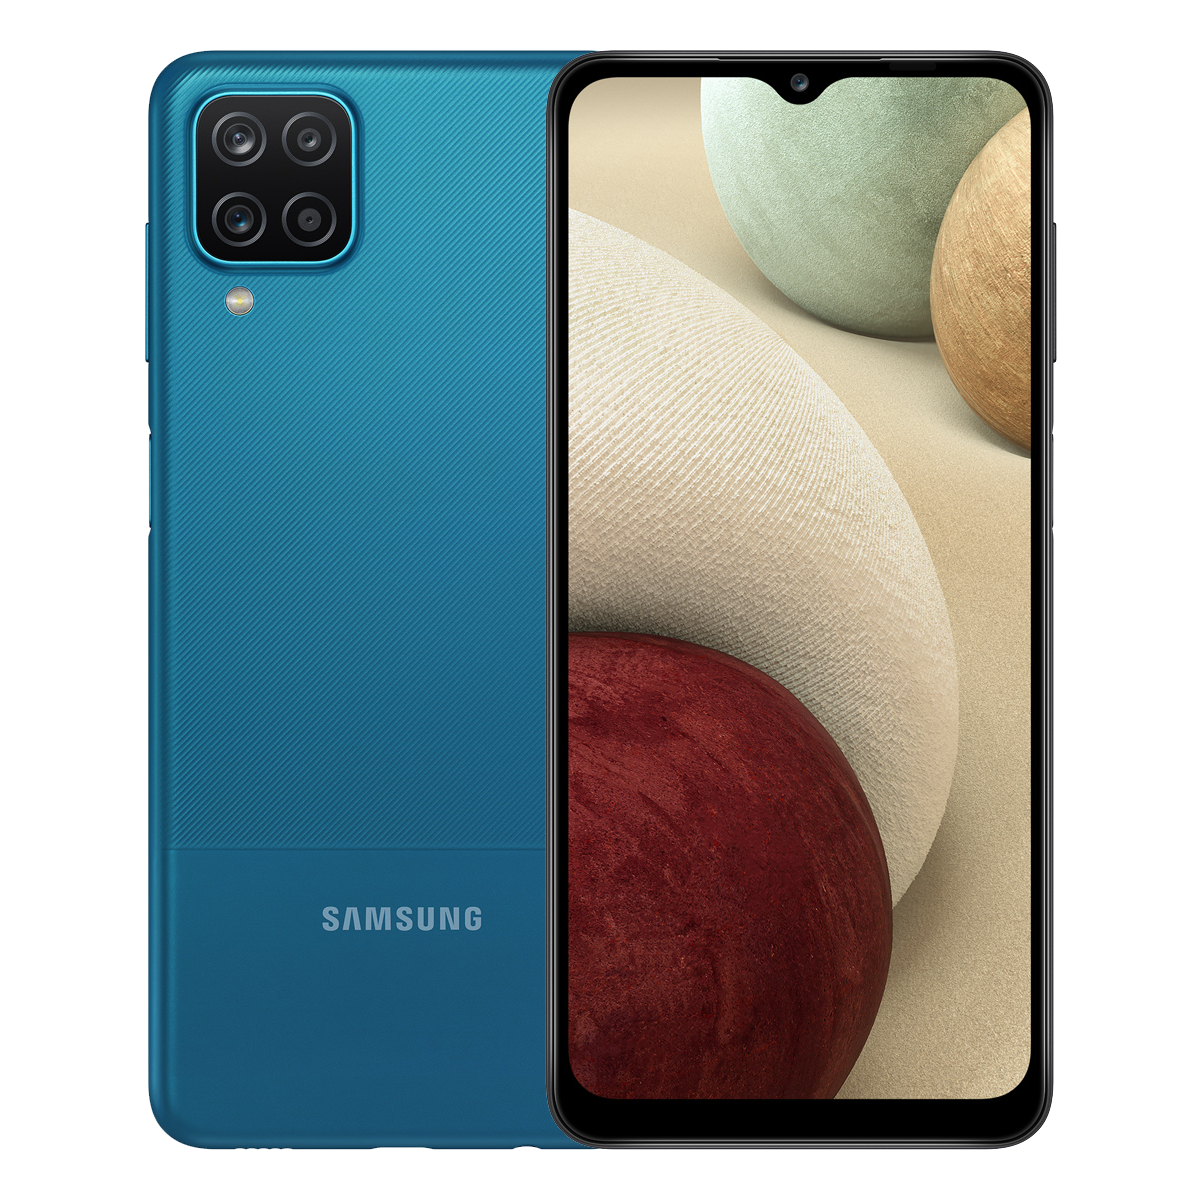 Samsung Galaxy A12 prix, vidéos, bons plans et caractéristiques techniques